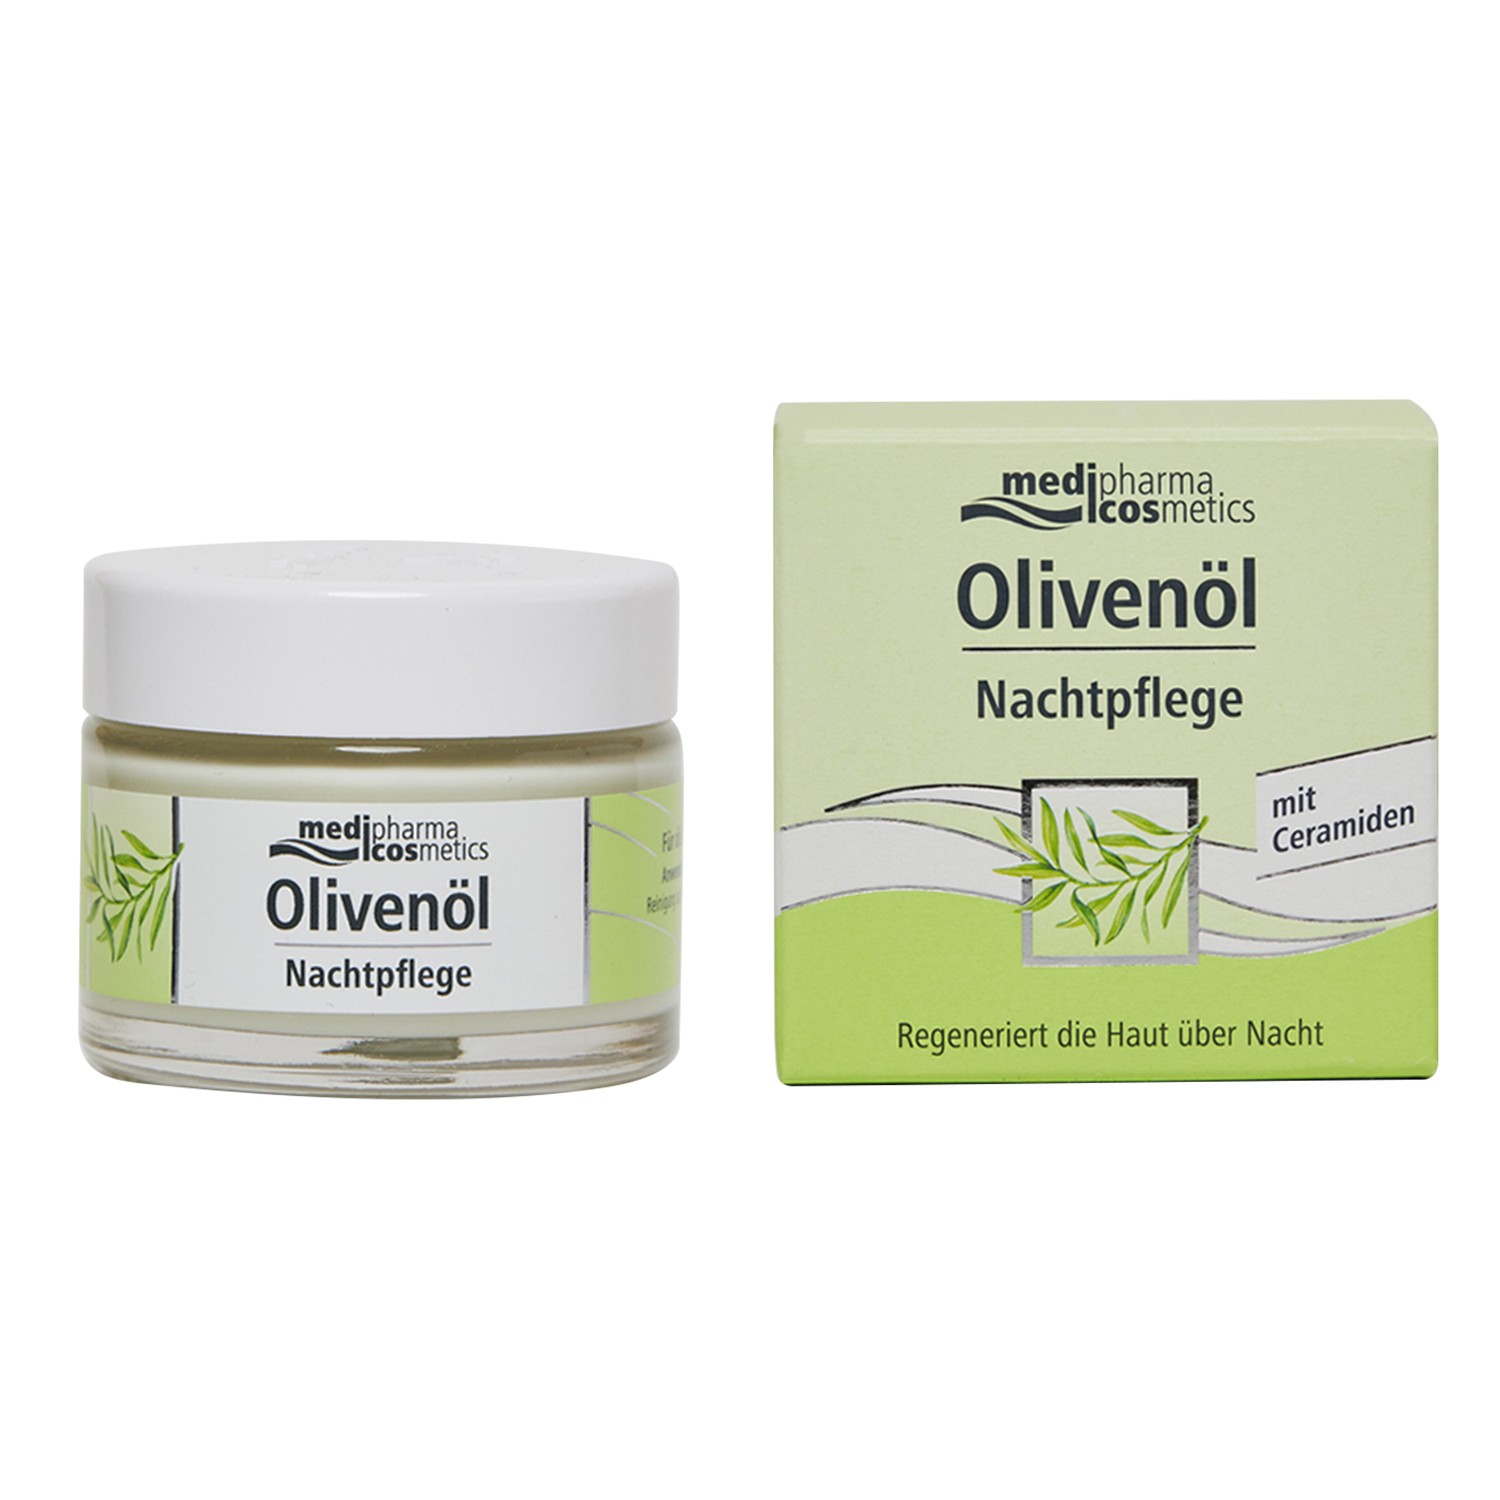 Купить Medipharma Cosmetics Ночной крем для лица Olivenol, 50 мл (Medipharma Cosmetics, Olivenol), Германия